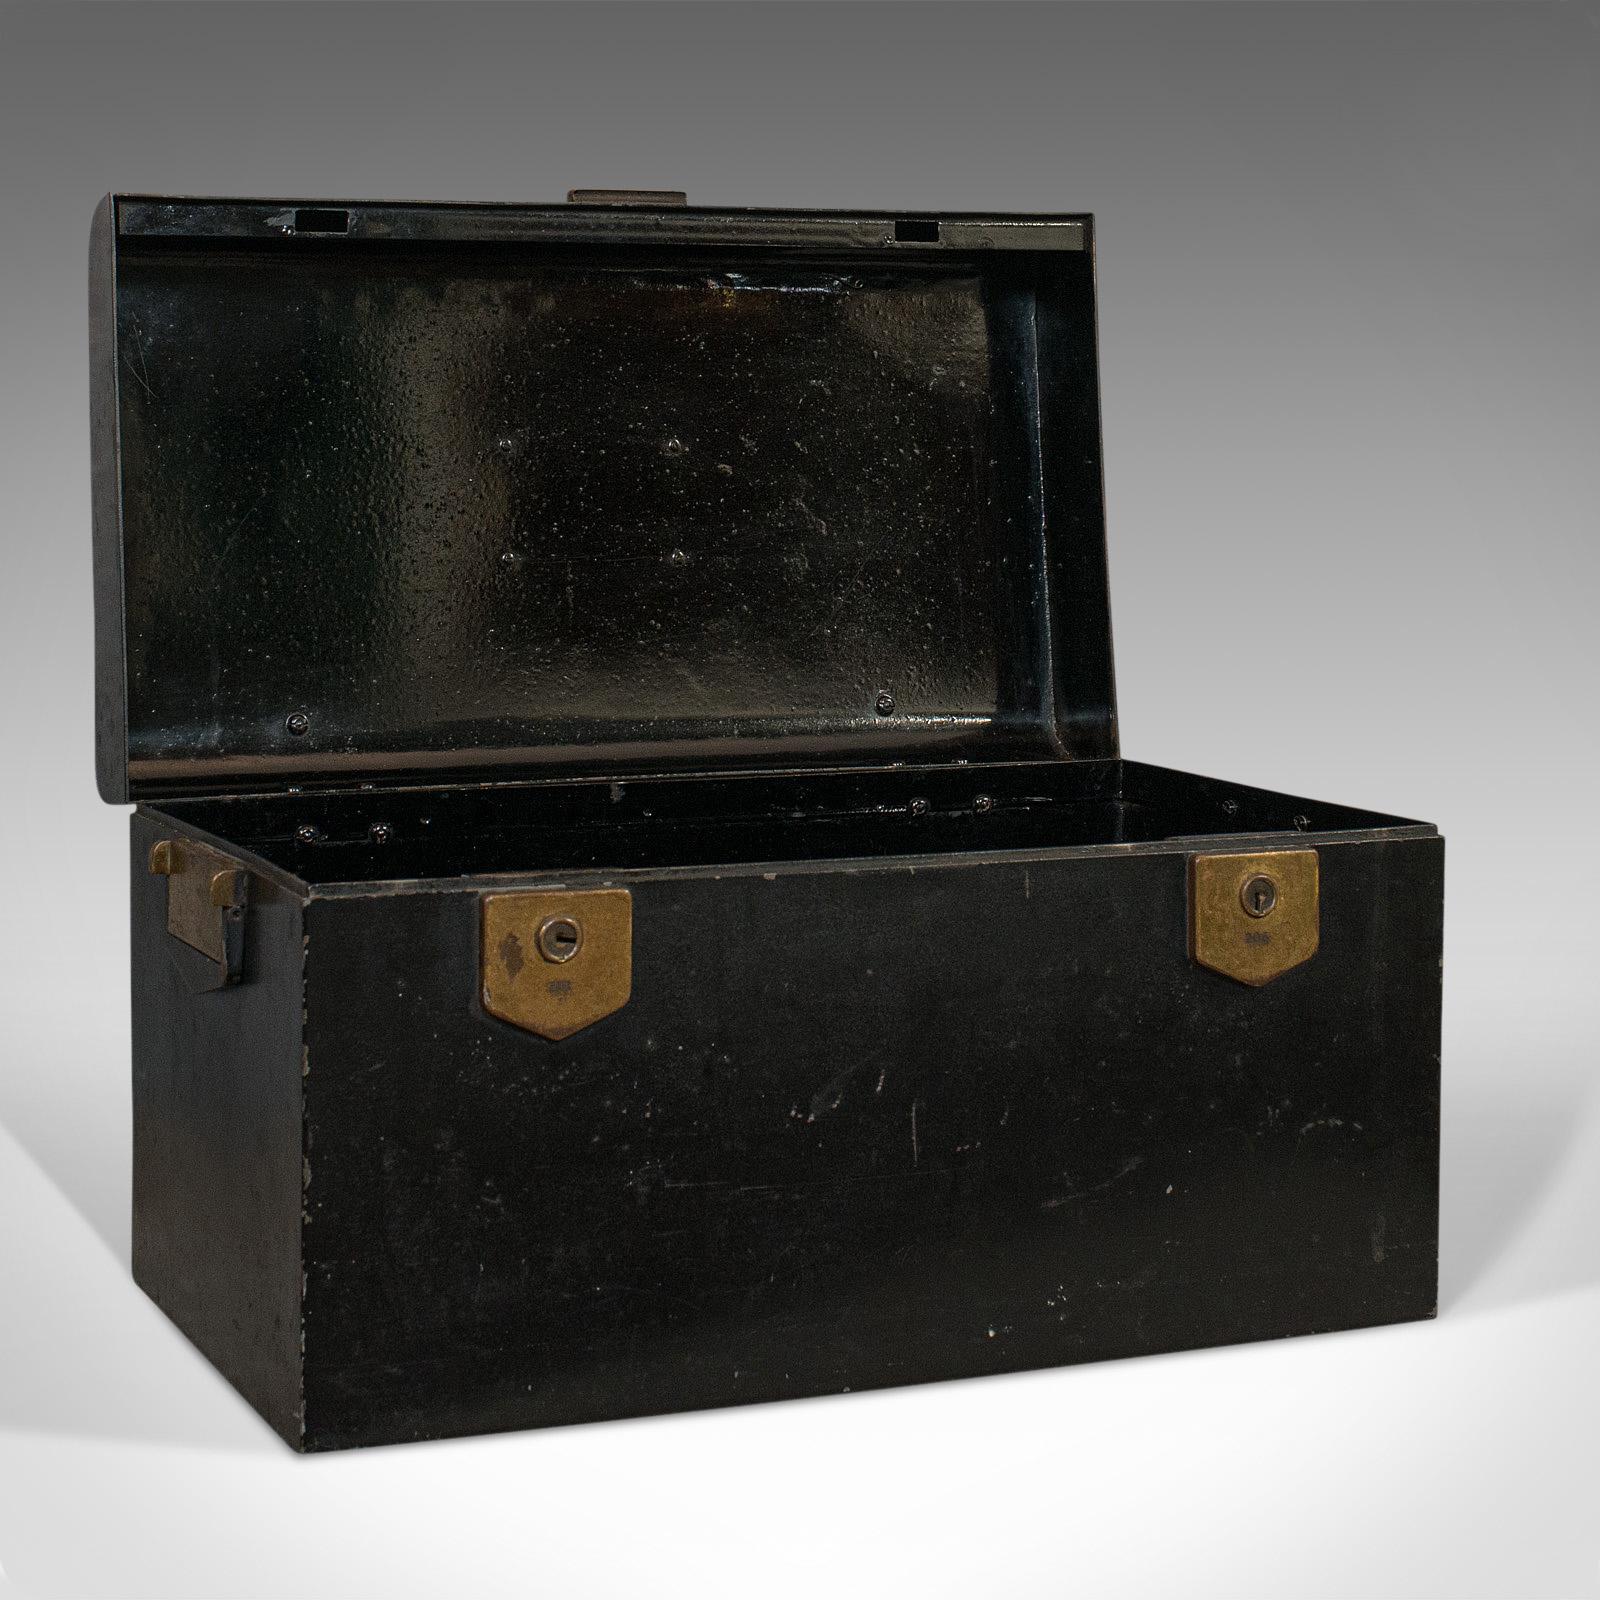 Dies ist eine alte Urkundenbox. Eine englische, eiserne Dokumenten- oder Aufbewahrungstruhe im Art-Deco-Stil aus dem frühen 20. Jahrhundert, um 1930.

Zeigt eine wünschenswerte gealterte Patina
Schwarzer Anstrich über Eisen zeigt altersgemäße